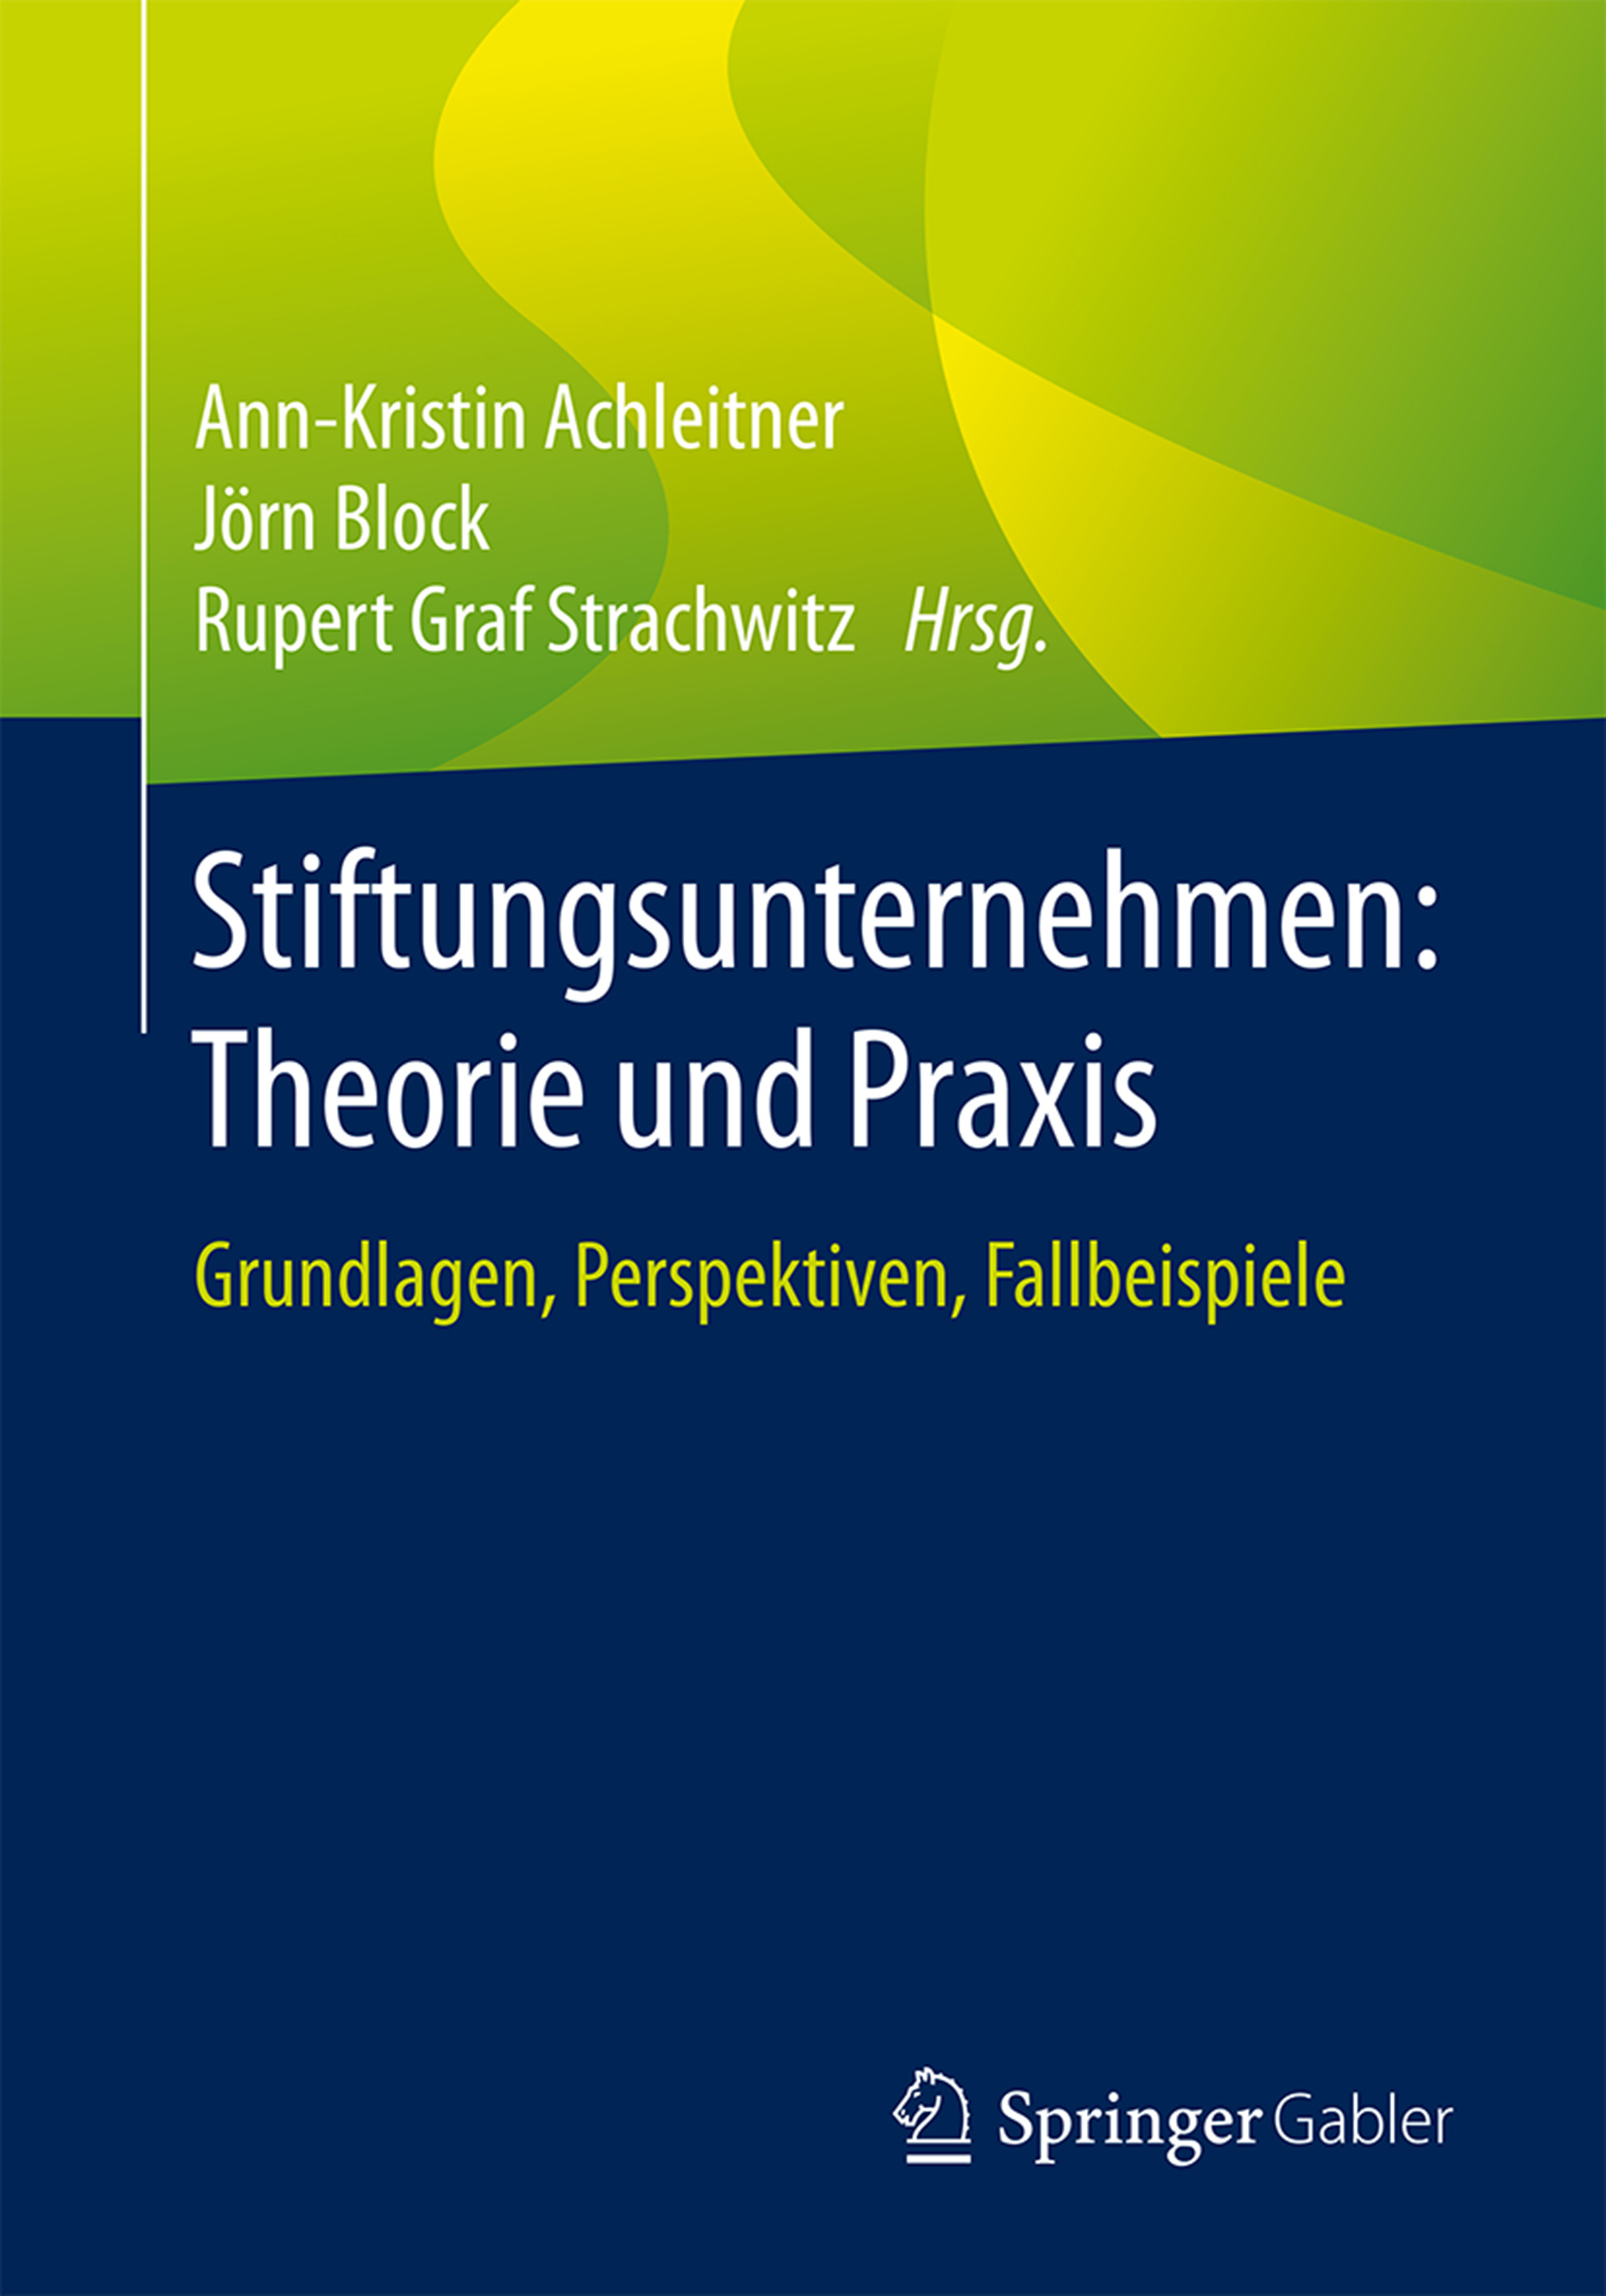 Achleitner, Ann-Kristin - Stiftungsunternehmen: Theorie und Praxis, ebook